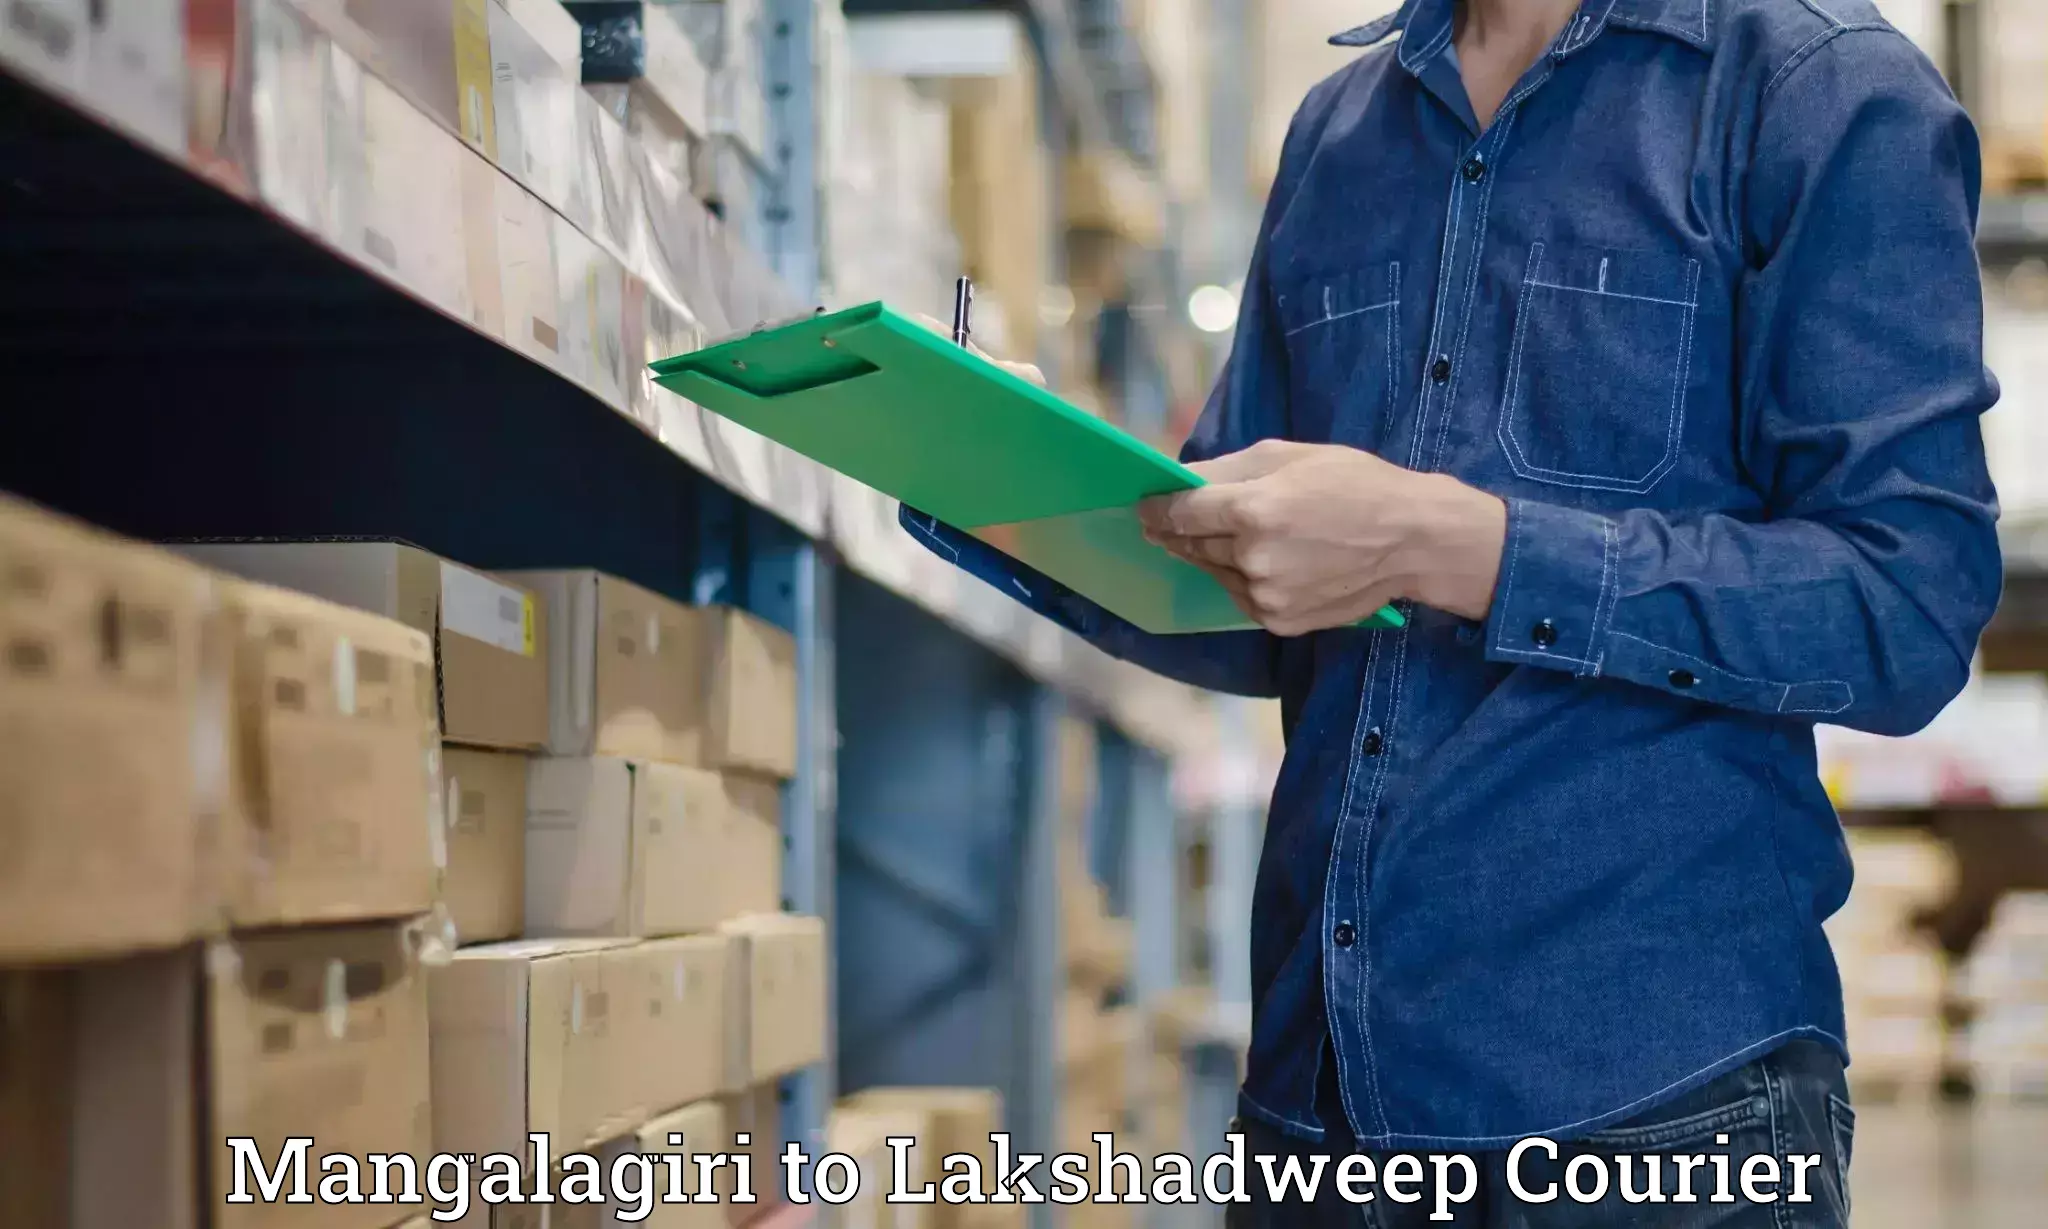 Doorstep delivery service Mangalagiri to Lakshadweep